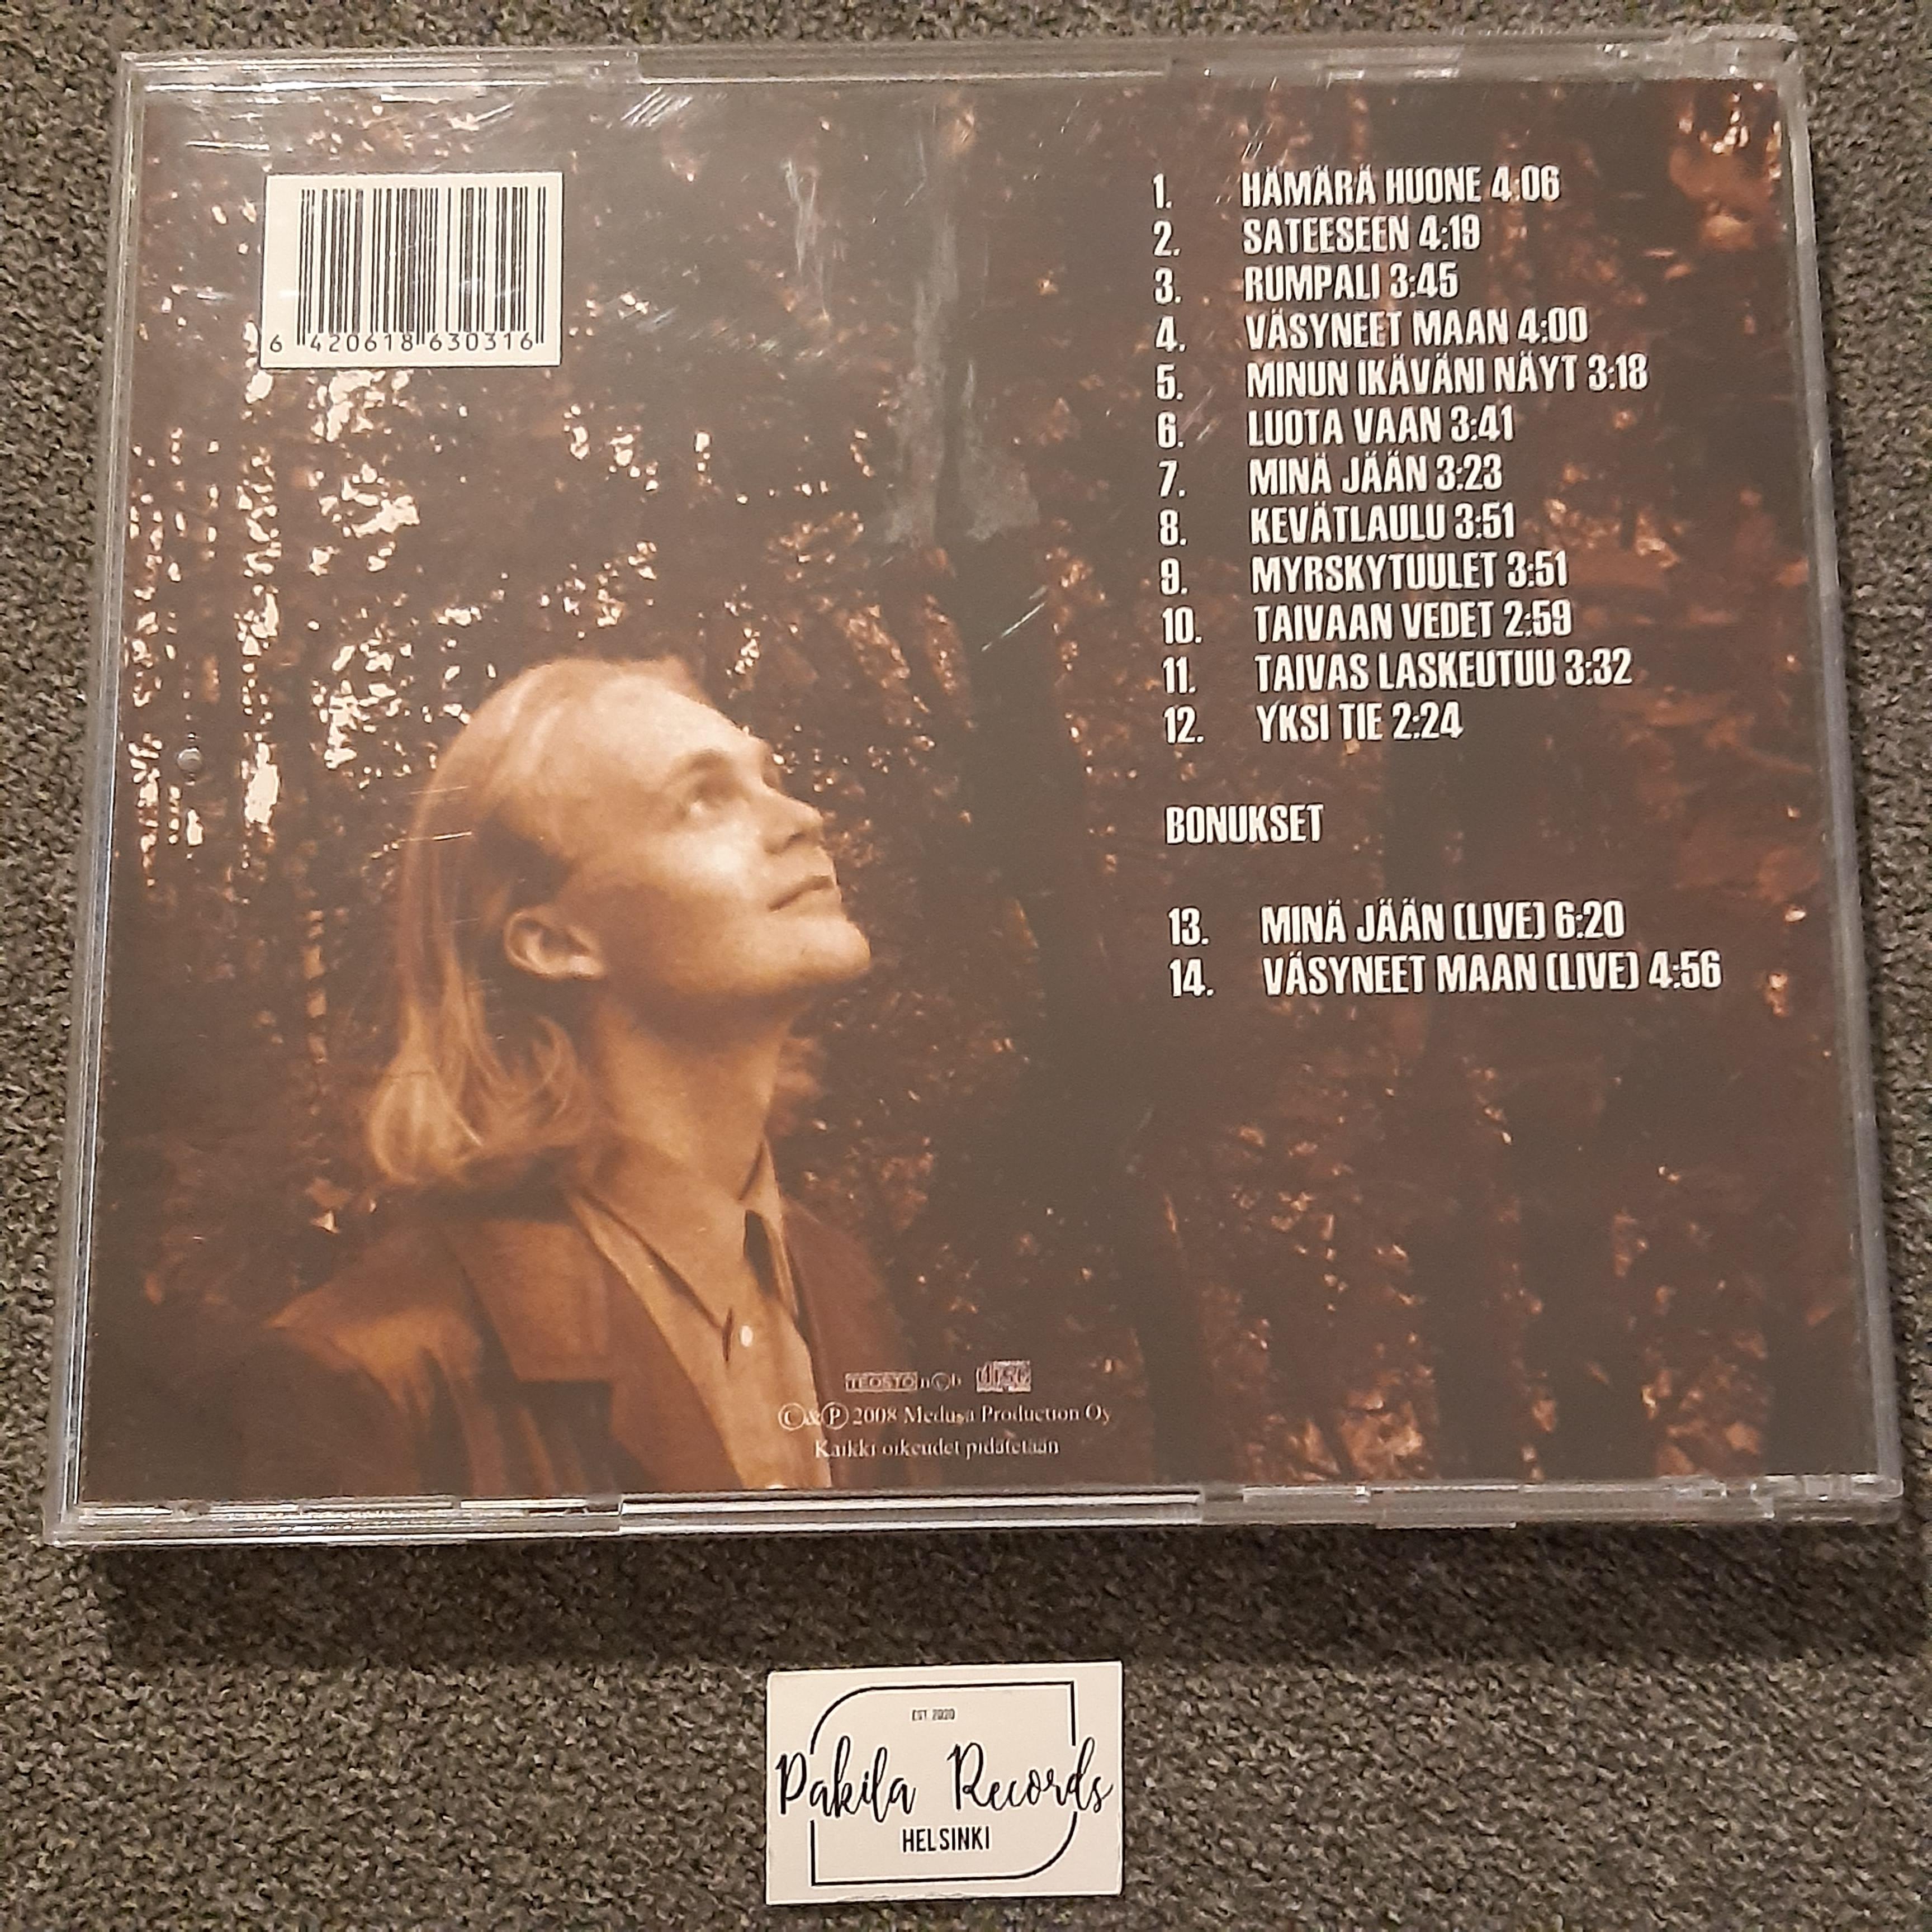 Juha Tapio - Tuulen valtakunta - CD (käytetty)